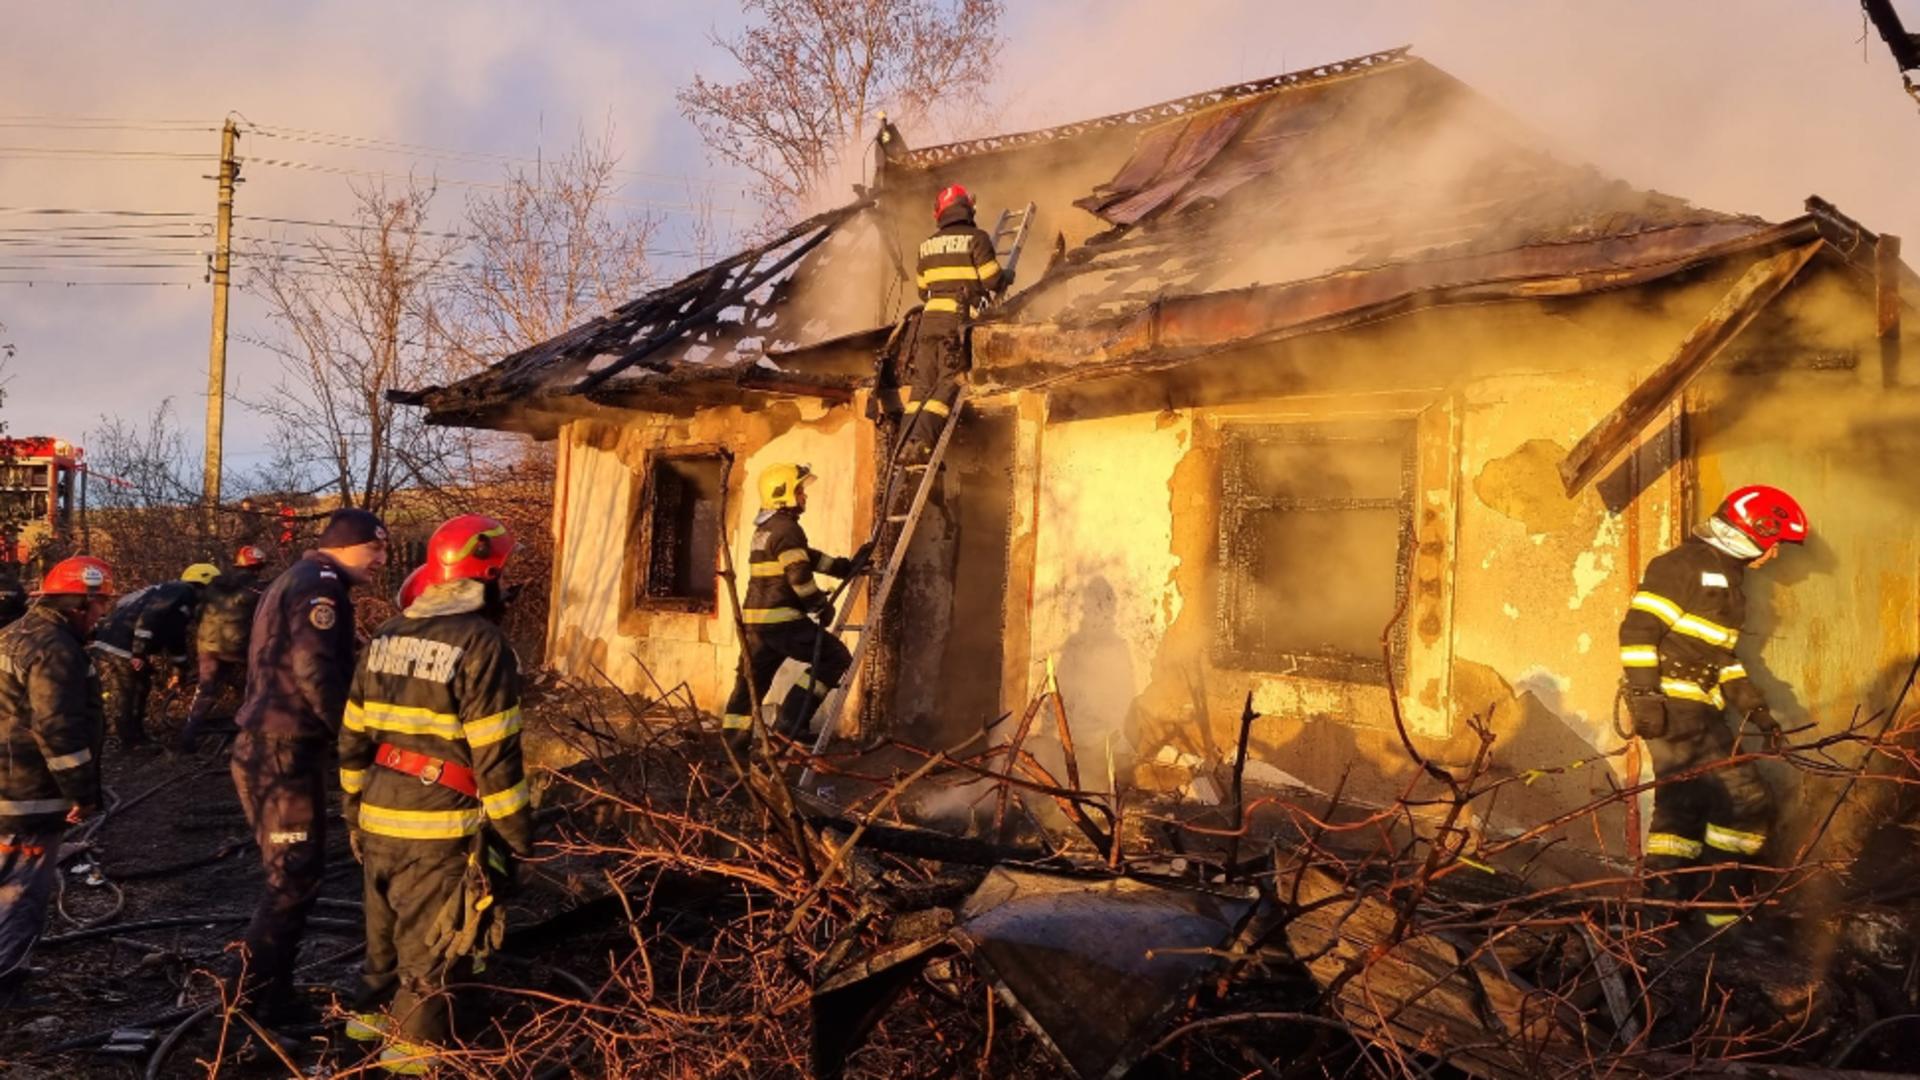 Sfârșit tragic pentru un bărbat din Botoșani. A murit în incendiul care i-a cuprins casa, după ce a adormit cu țigara în mână